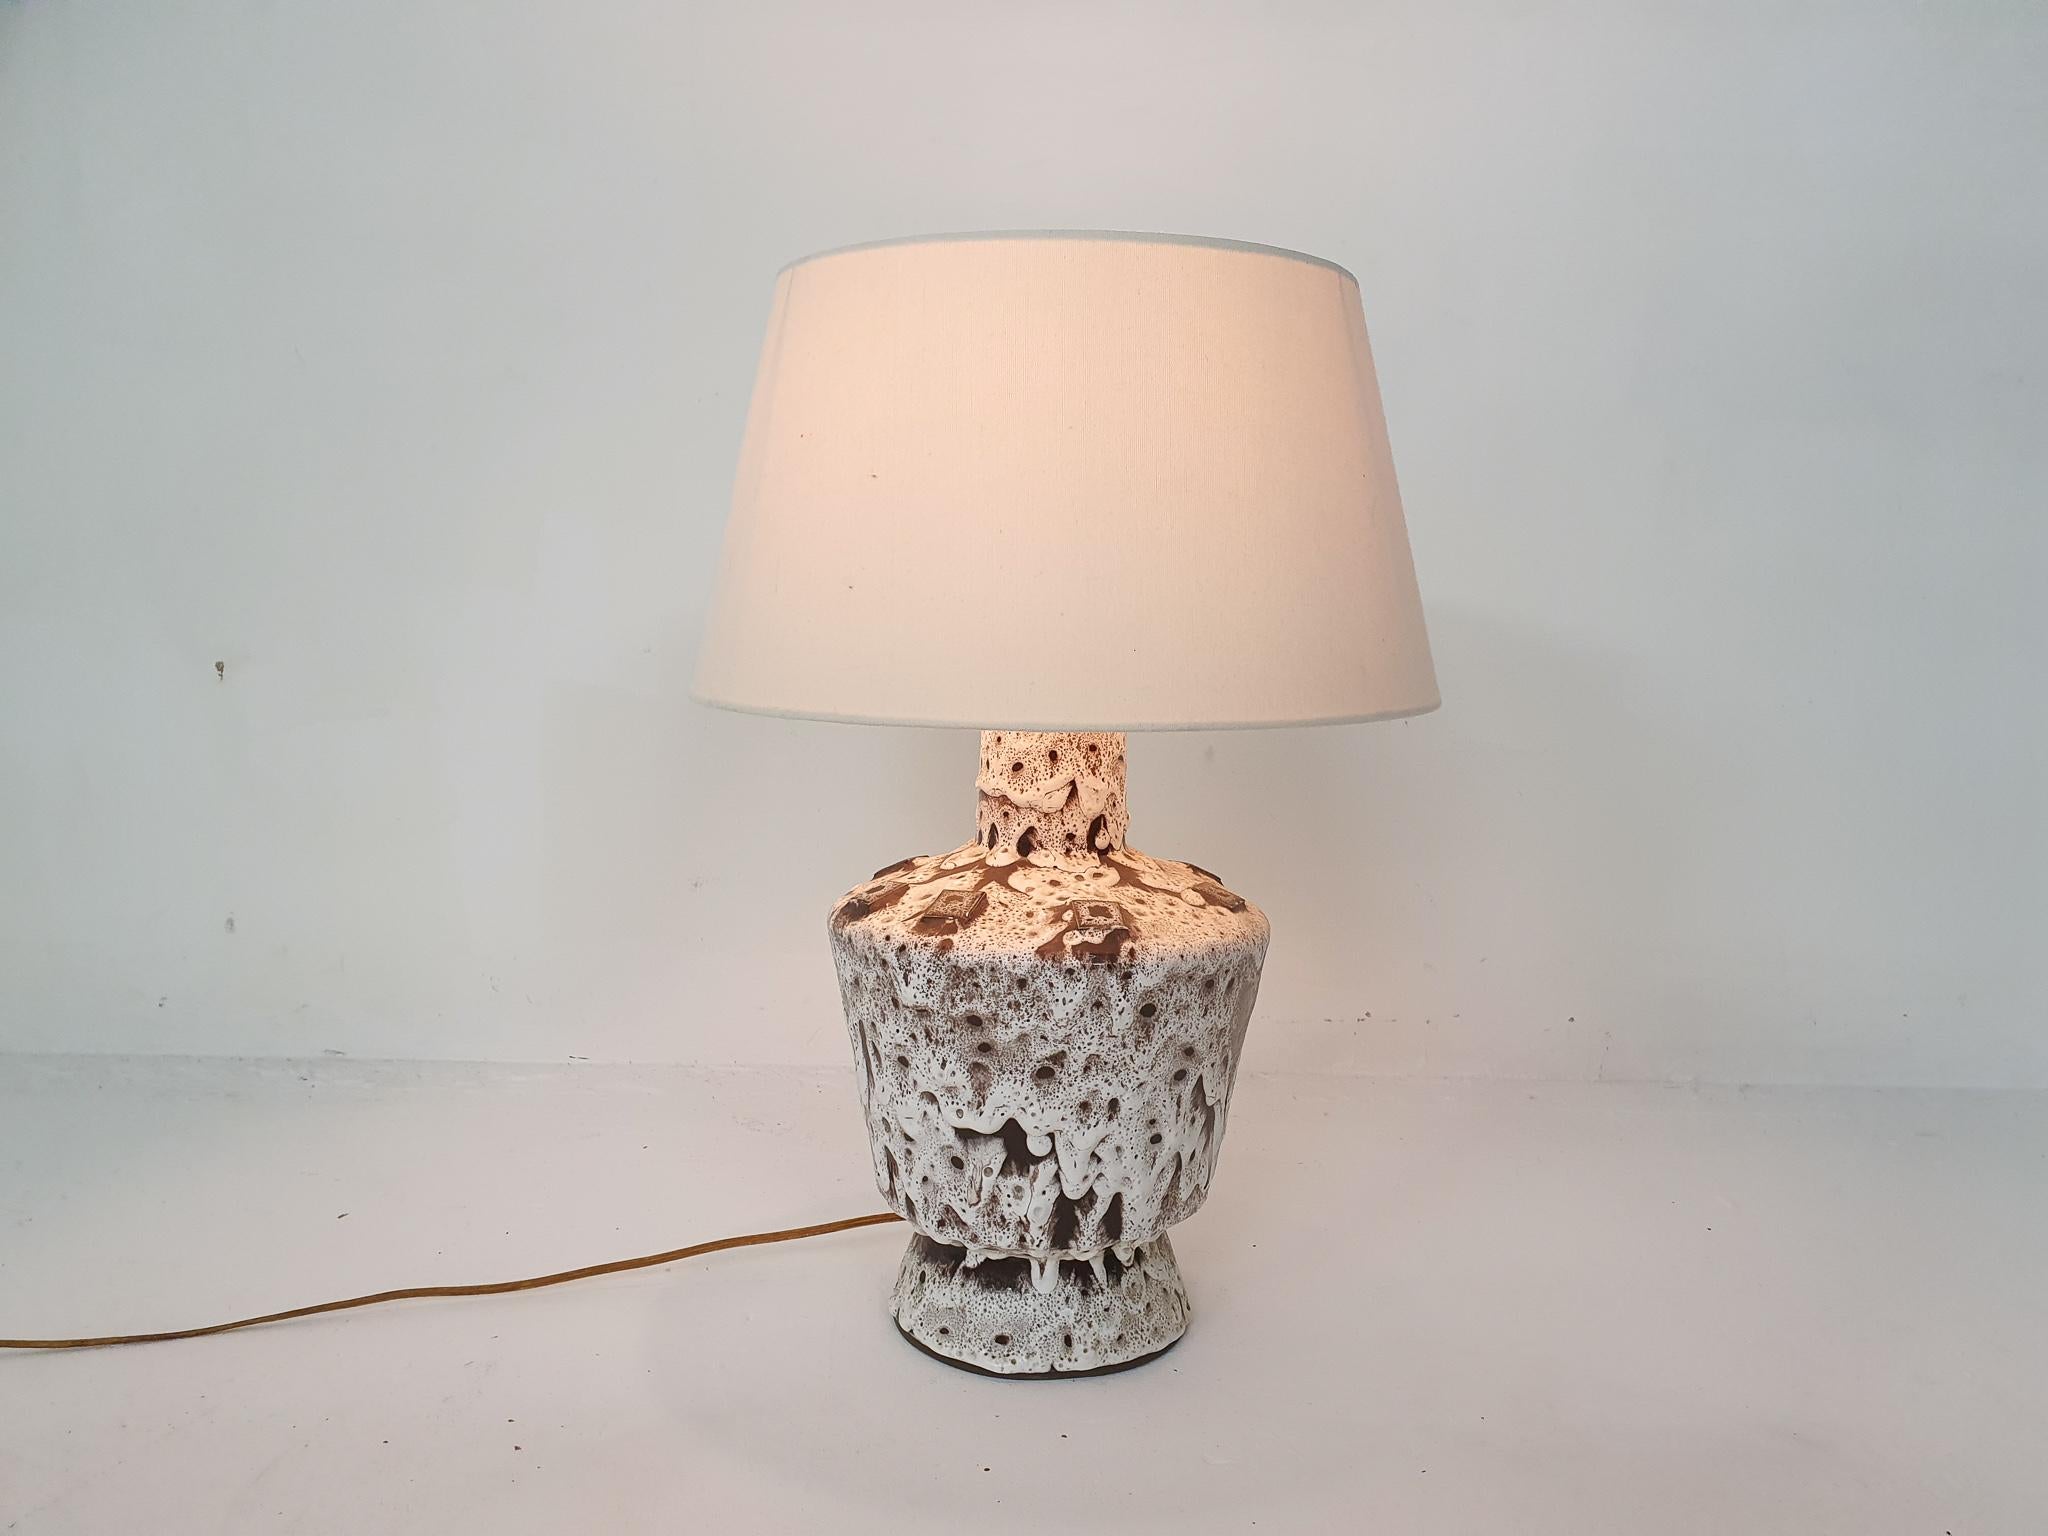 Lampe de table en céramique blanche et marron avec abat-jour blanc. Il possède le câblage d'origine, mais nous pouvons le remplacer par un nouveau fil, si vous le souhaitez.